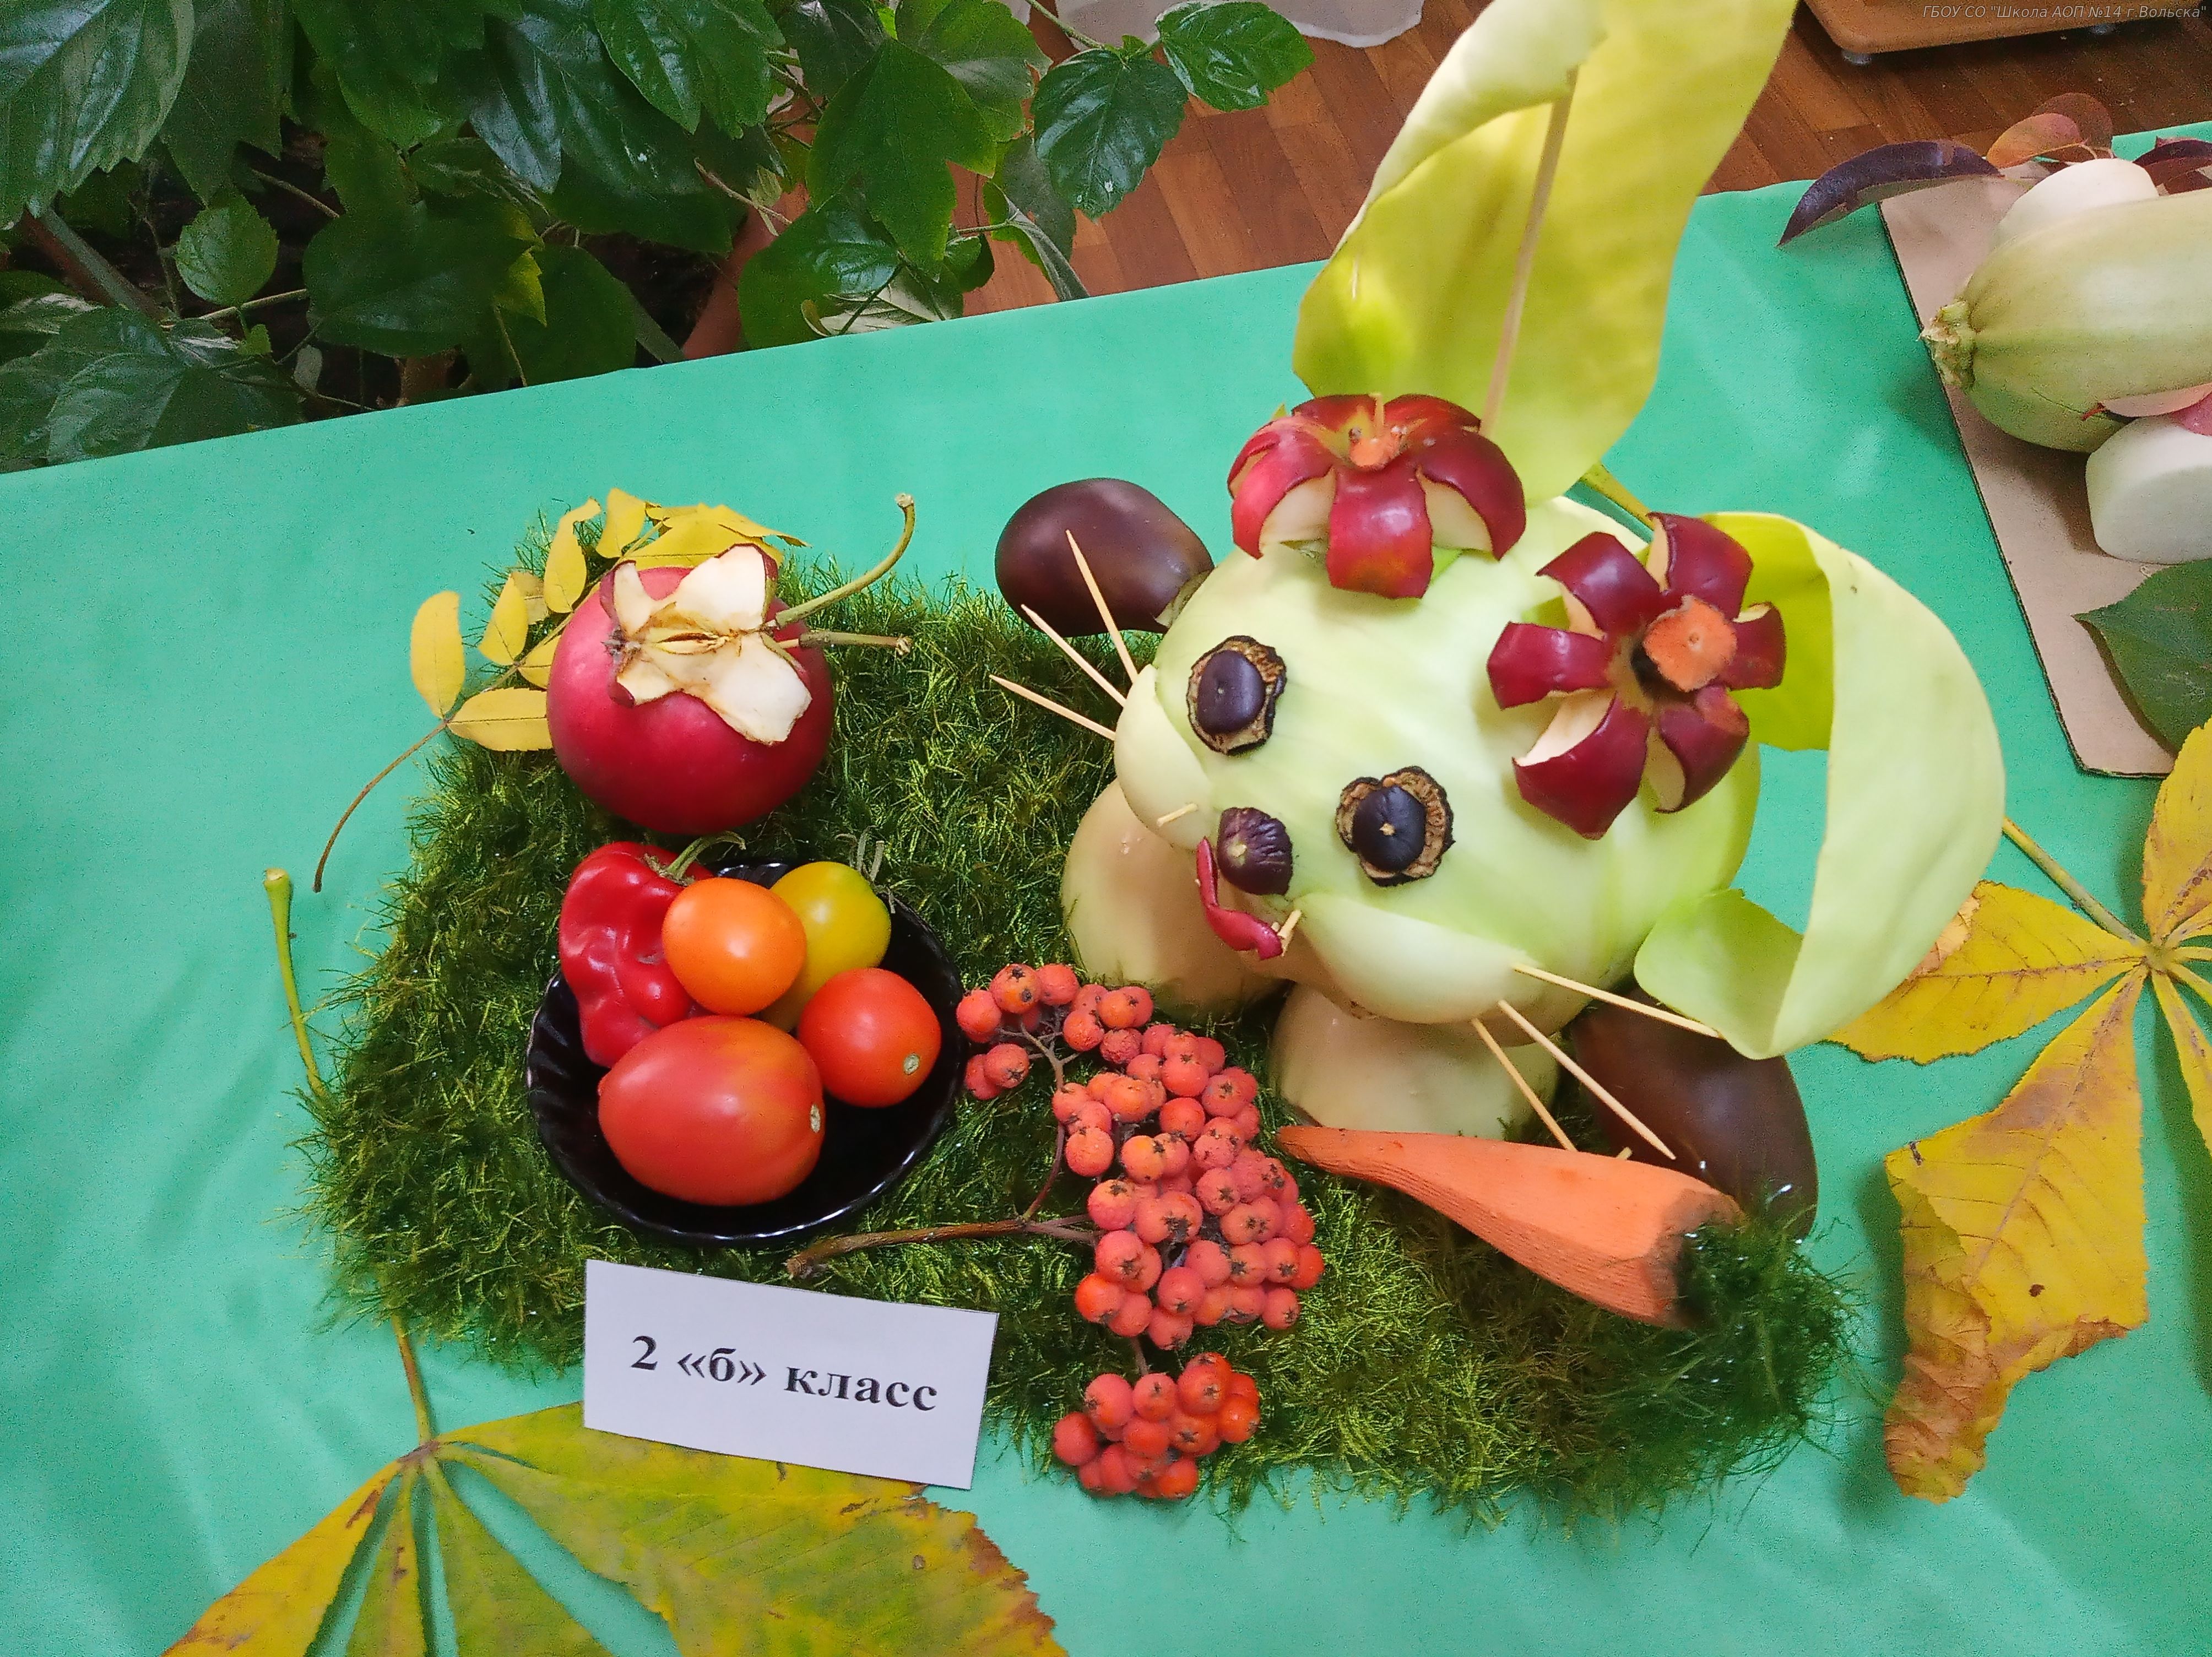 Яркие поделки из овощей и фруктов представили дети на выставке в Тайшете